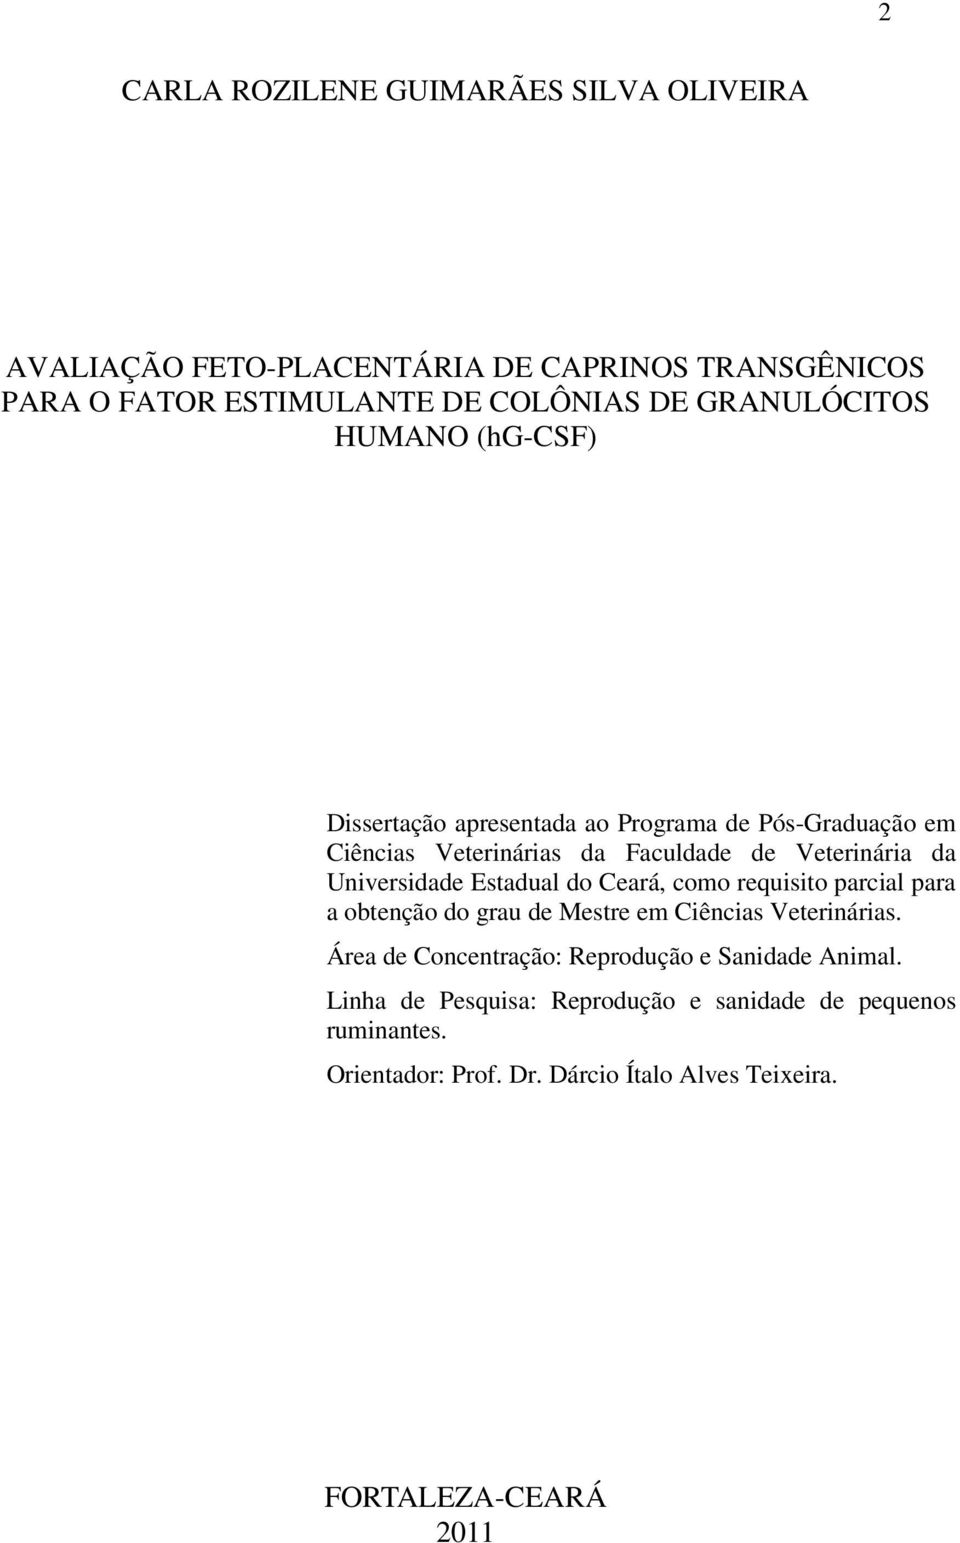 Universidade Estadual do Ceará, como requisito parcial para a obtenção do grau de Mestre em Ciências Veterinárias.